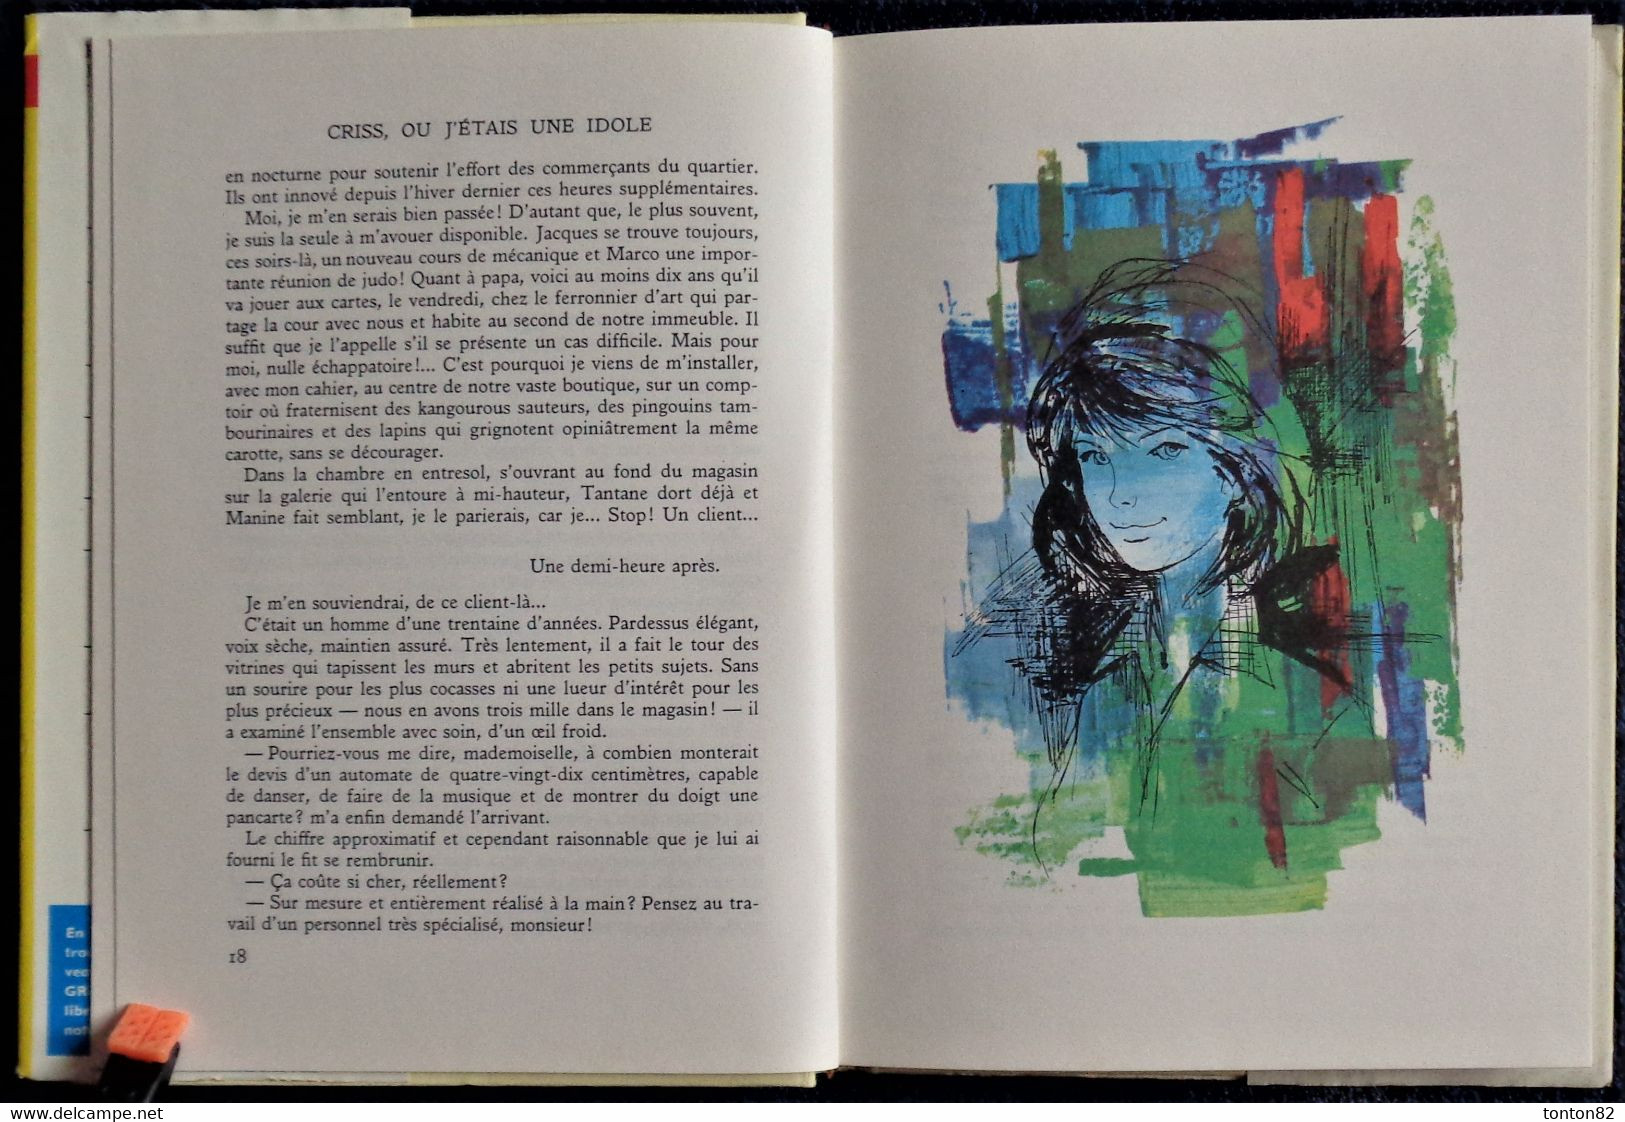 Saint-Marcoux - CRISS, ou j'étais une idole - Bibliothèque Rouge et Or n° 656 - ( 1964 ) .